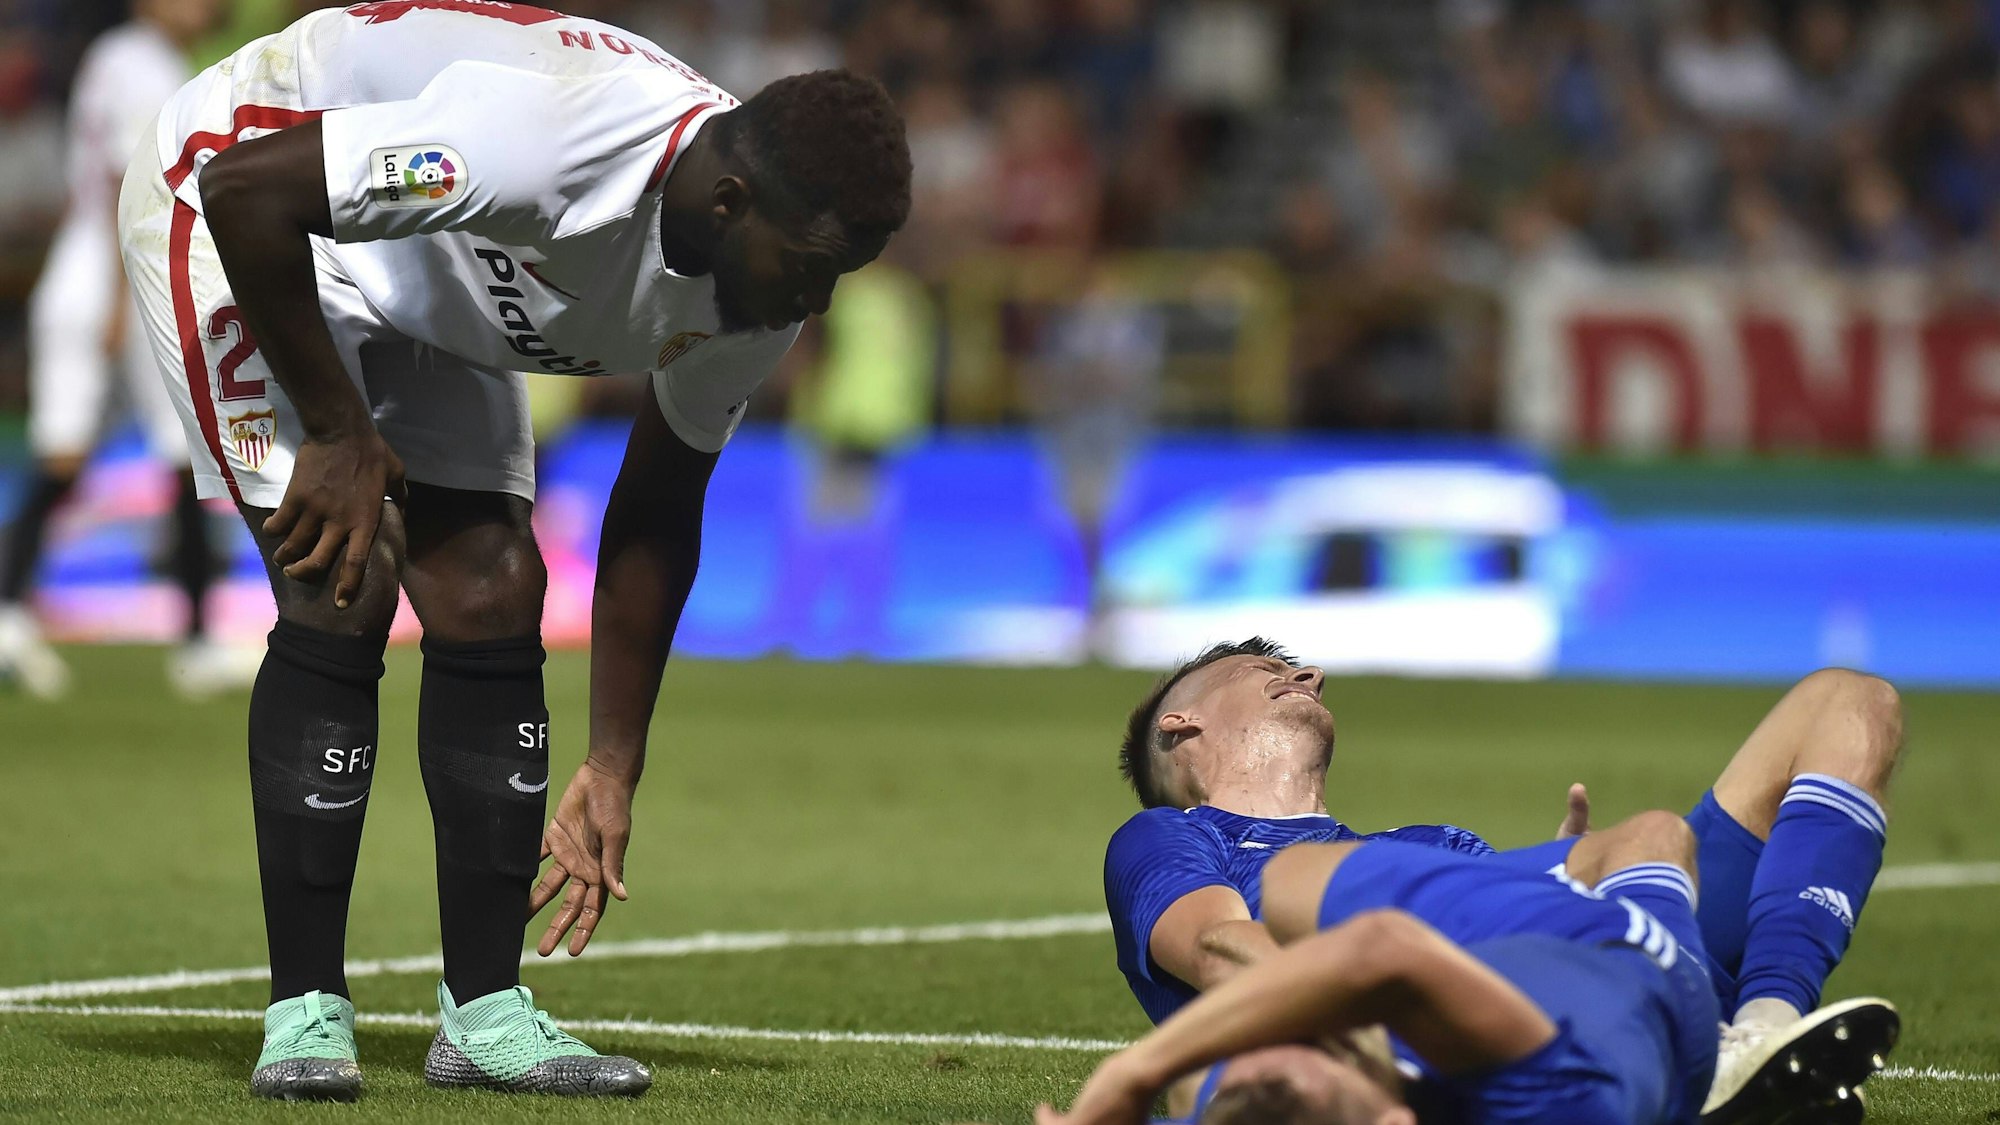 Joris Gnagnon, damals noch im Trikot des FC Sevilla, bückt sich, während zwei Gegenspieler verletzt auf dem Rasen liegen.